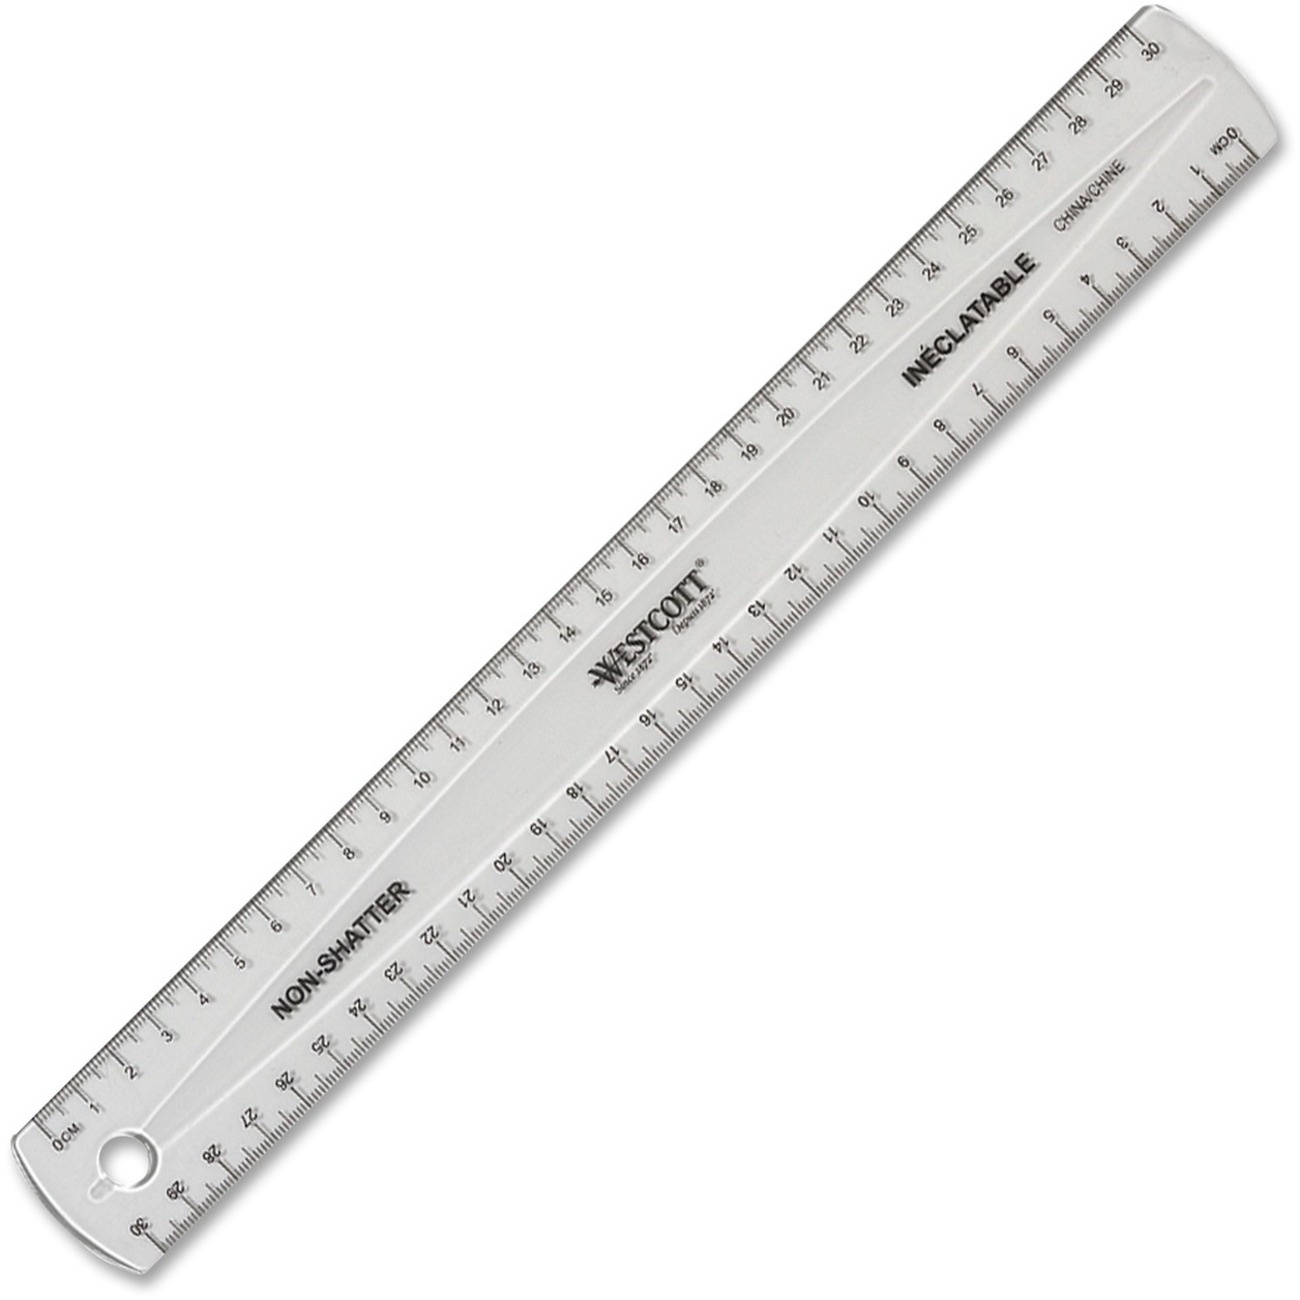 ruler measurement